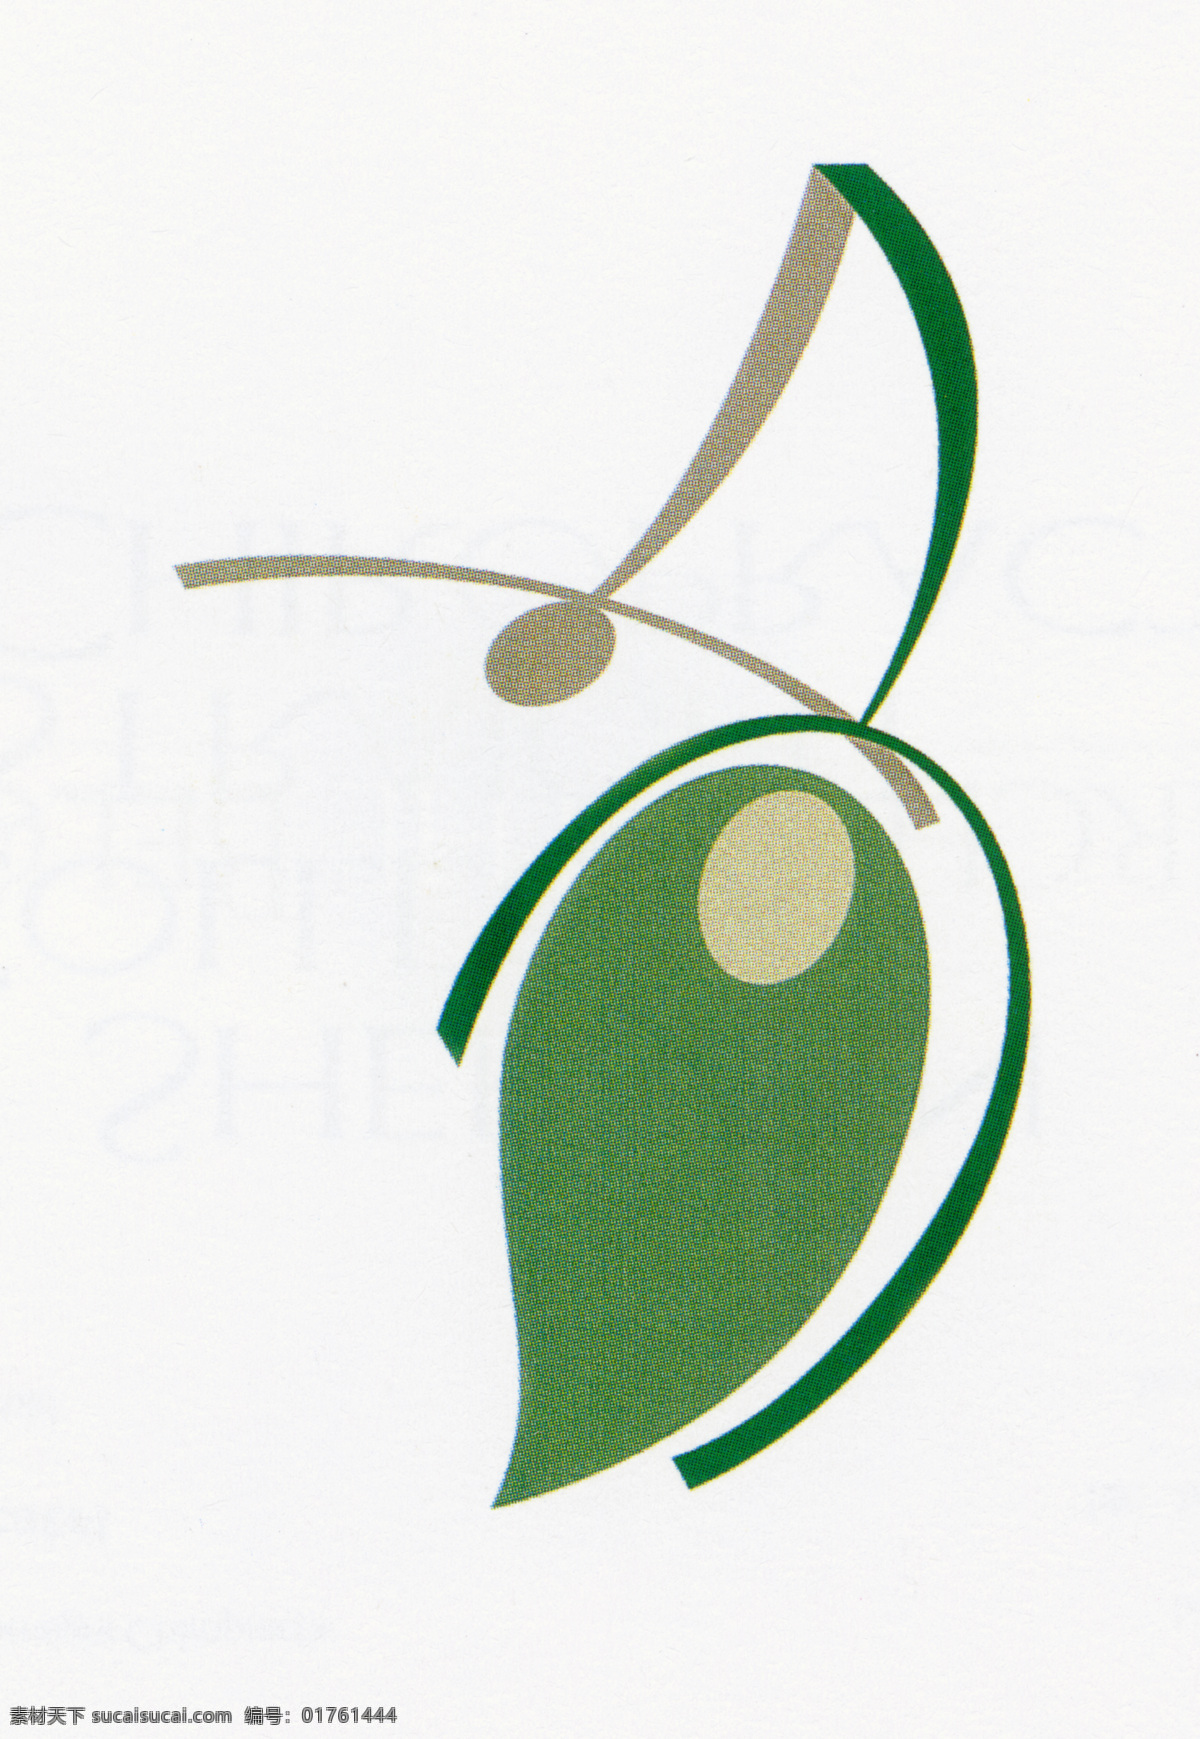 标志设计 标志 商标 注册商标 产品商标06 设计素材 标识设计 平面设计 白色